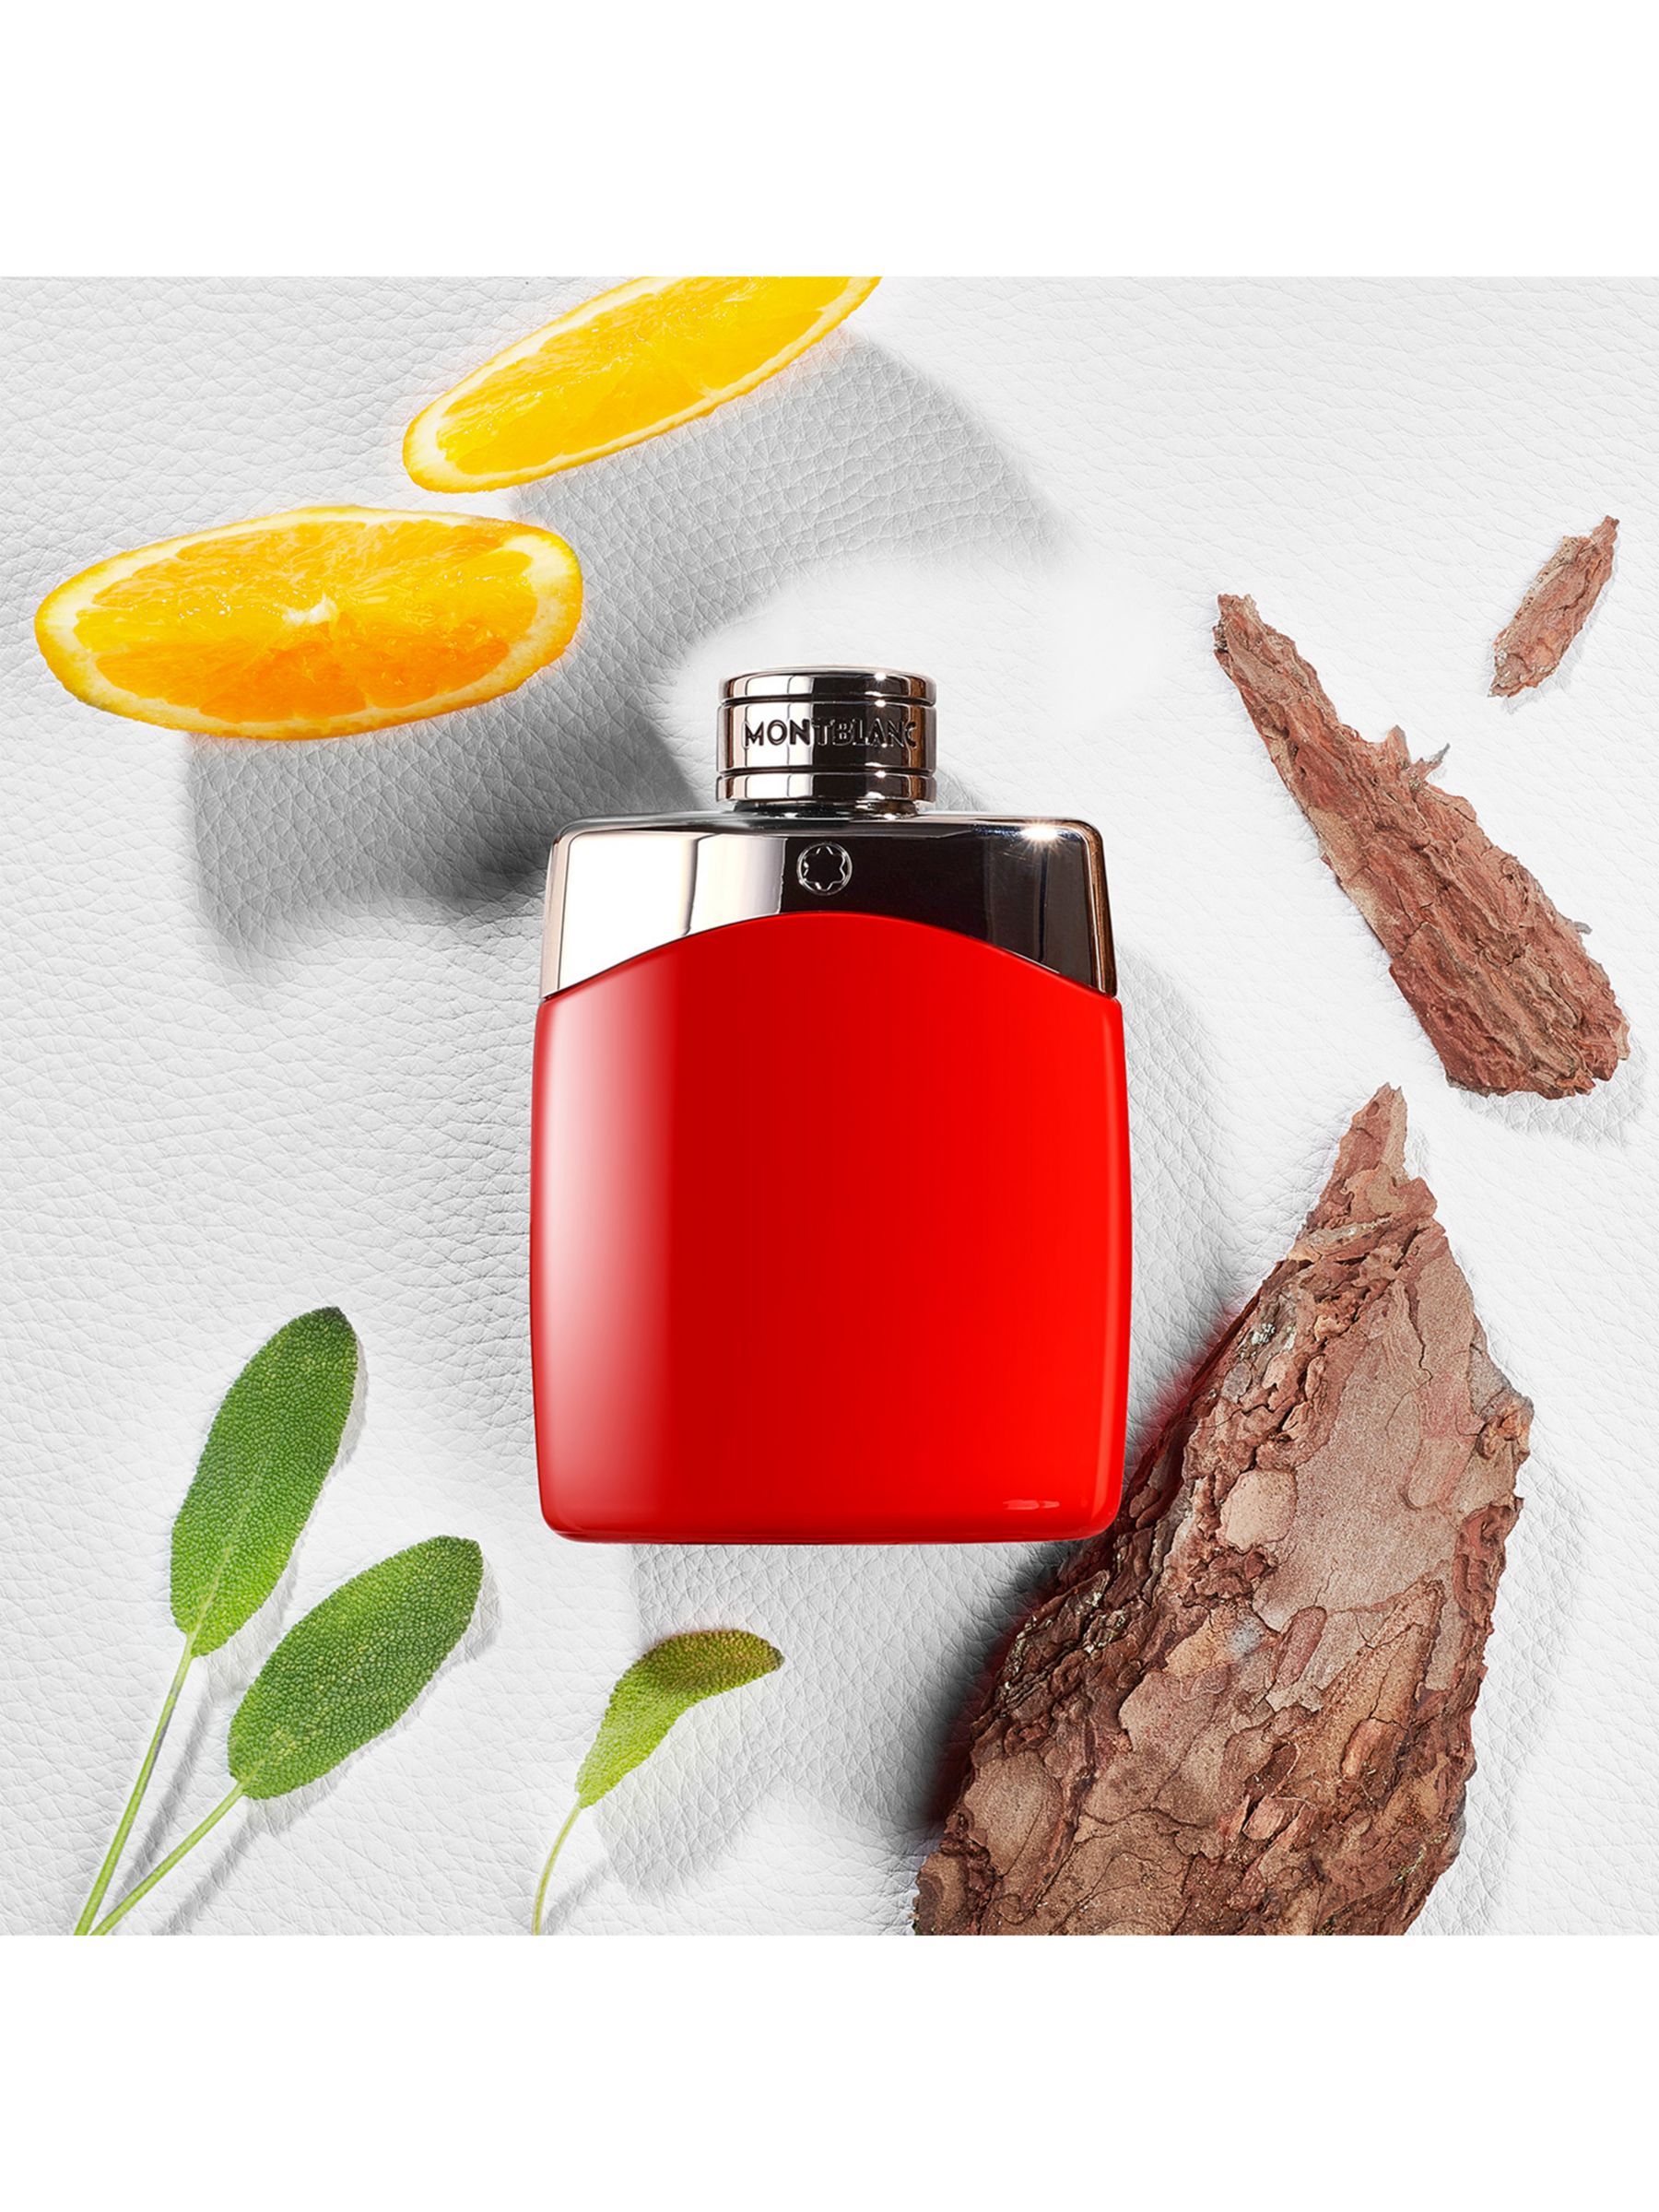 Montblanc Legend Red Eau de Parfum, 50ml